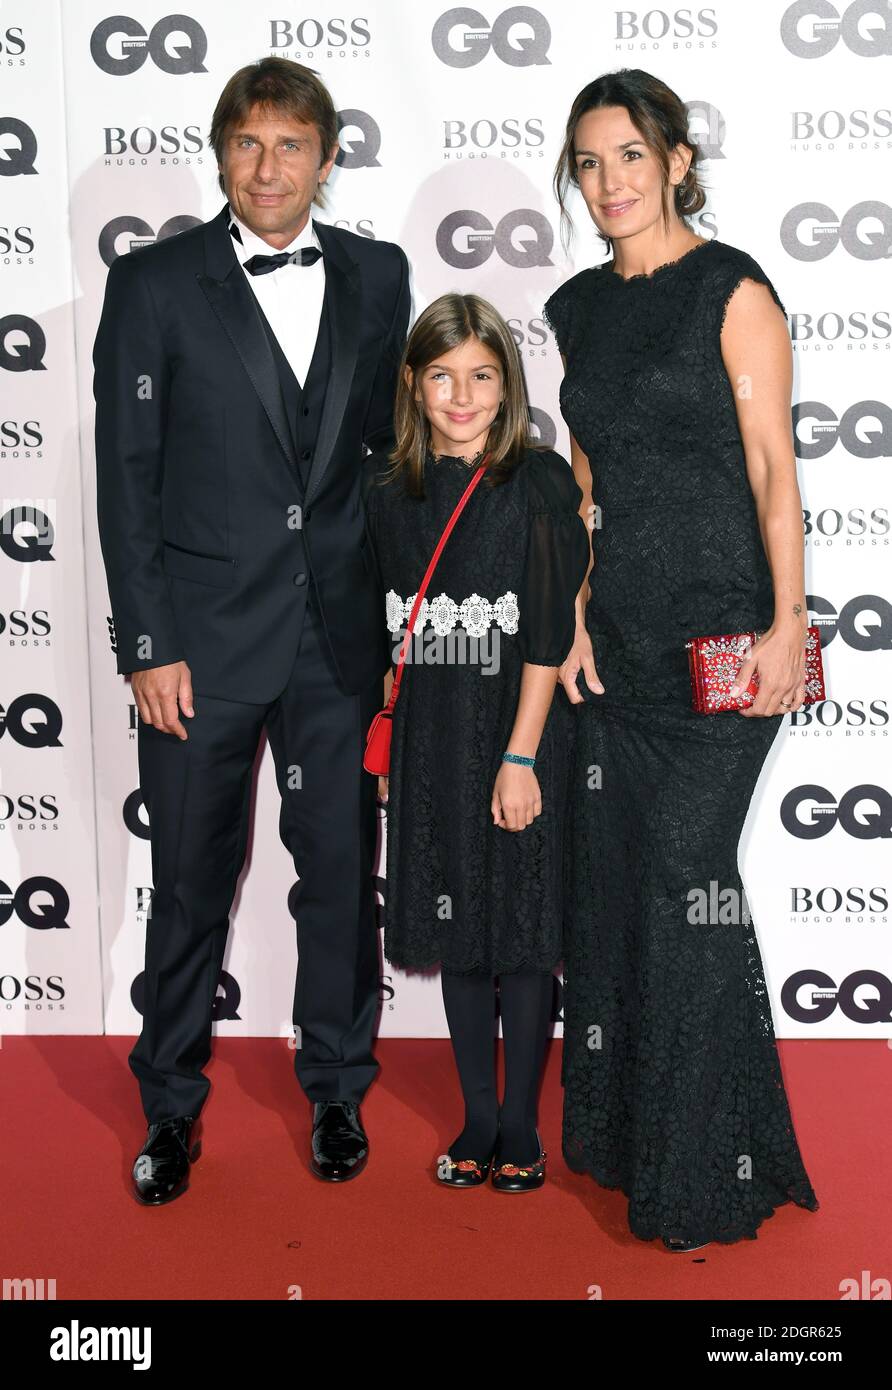 Antonio Conte mit Frau Elisabetta Muscarello und Tochter Vittoria Conte bei den GQ Men of the Year Awards 2017 in der Tate Modern, London. Bildnachweis sollte lauten: Doug Peters/Empics Entertainment Stockfoto